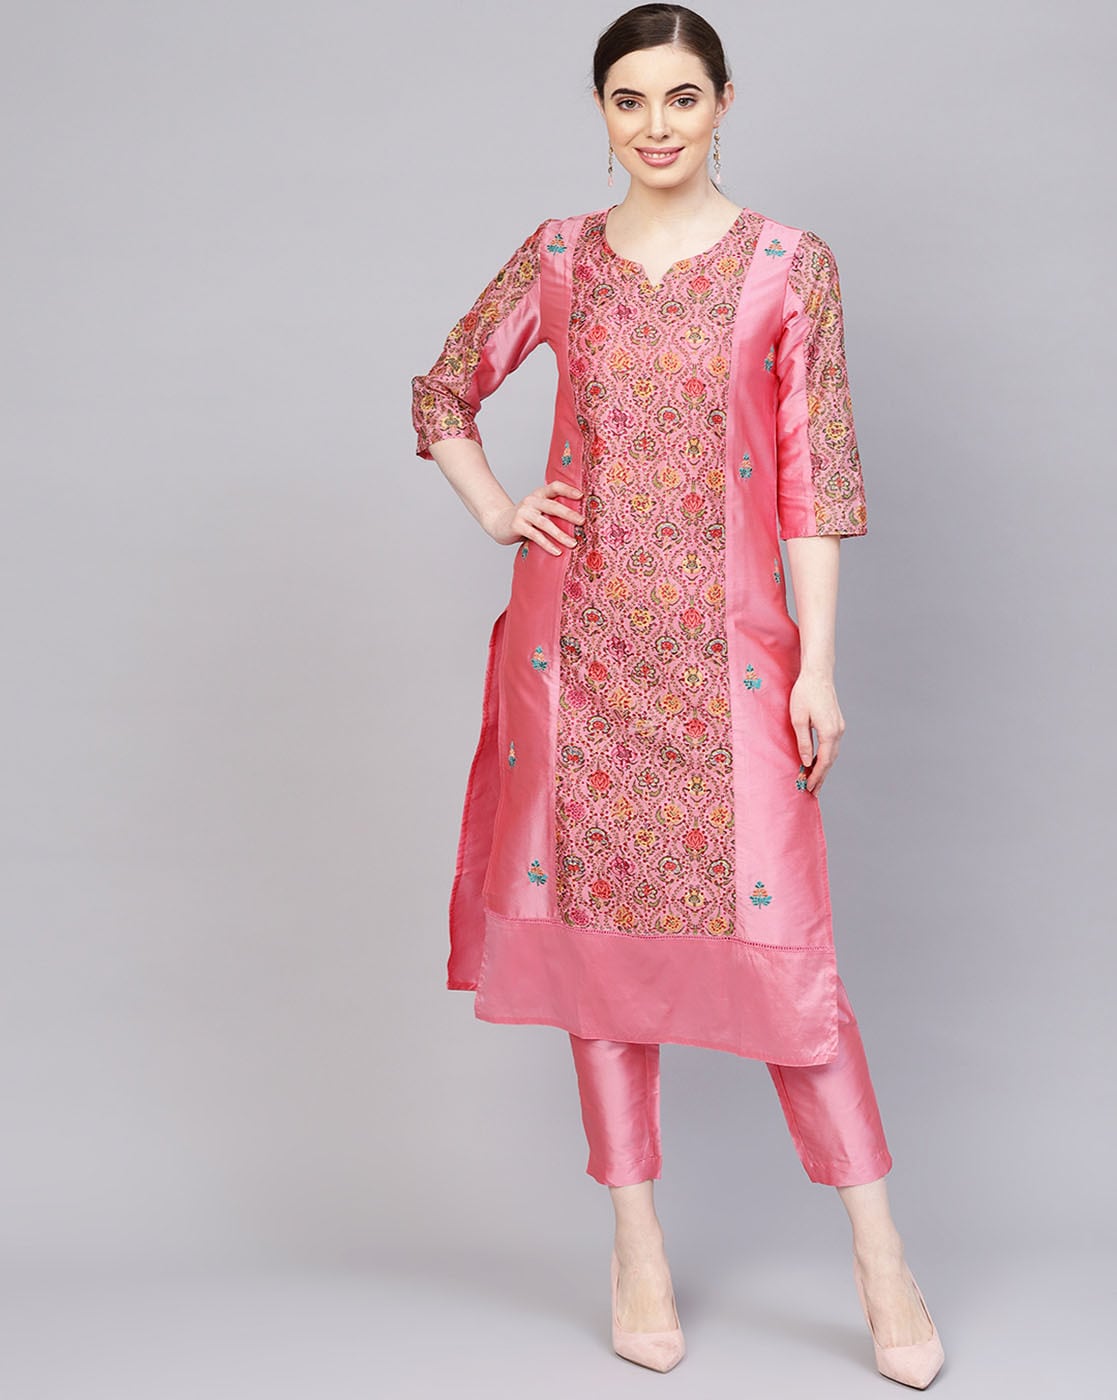 Simplicity  Long kurti designs Cotton kurti designs Long dress design